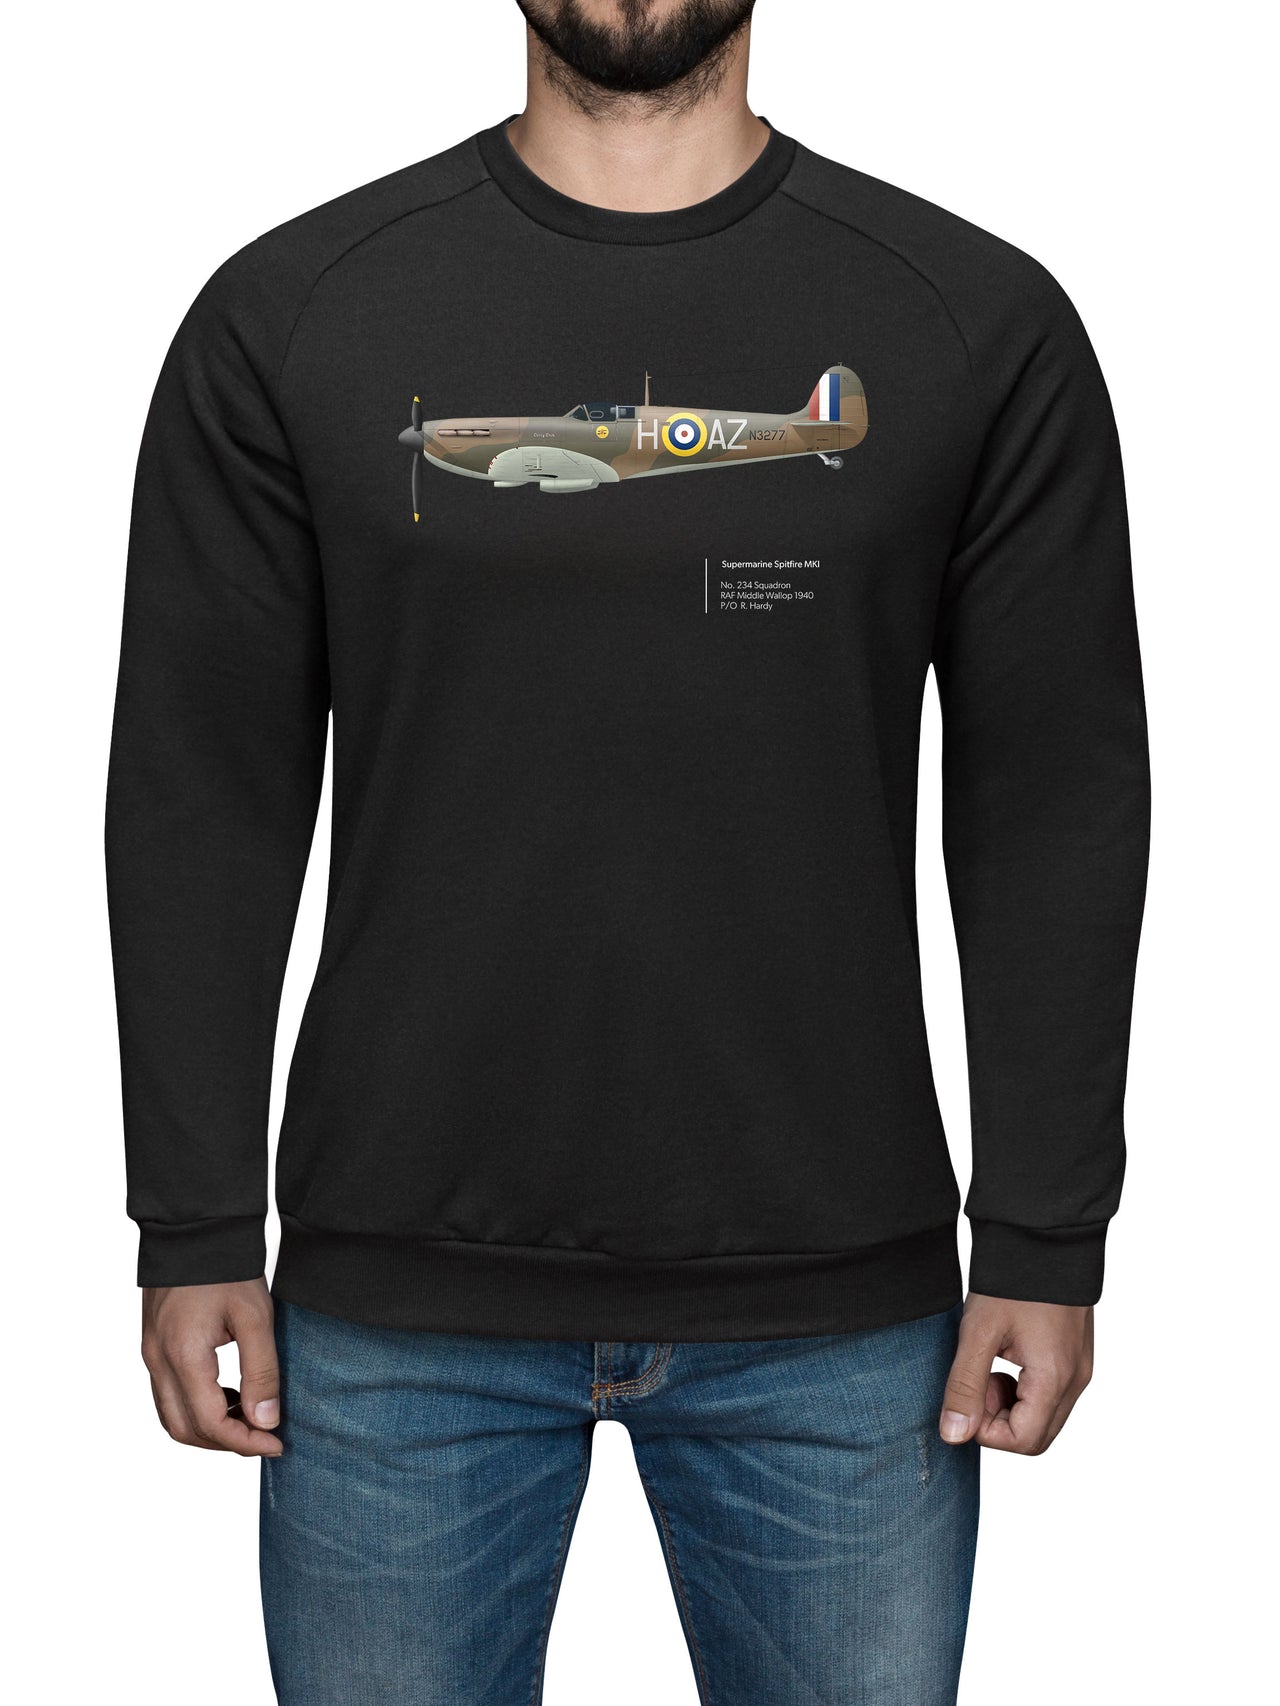 Spitfire 234SQN - Sweat Shirt